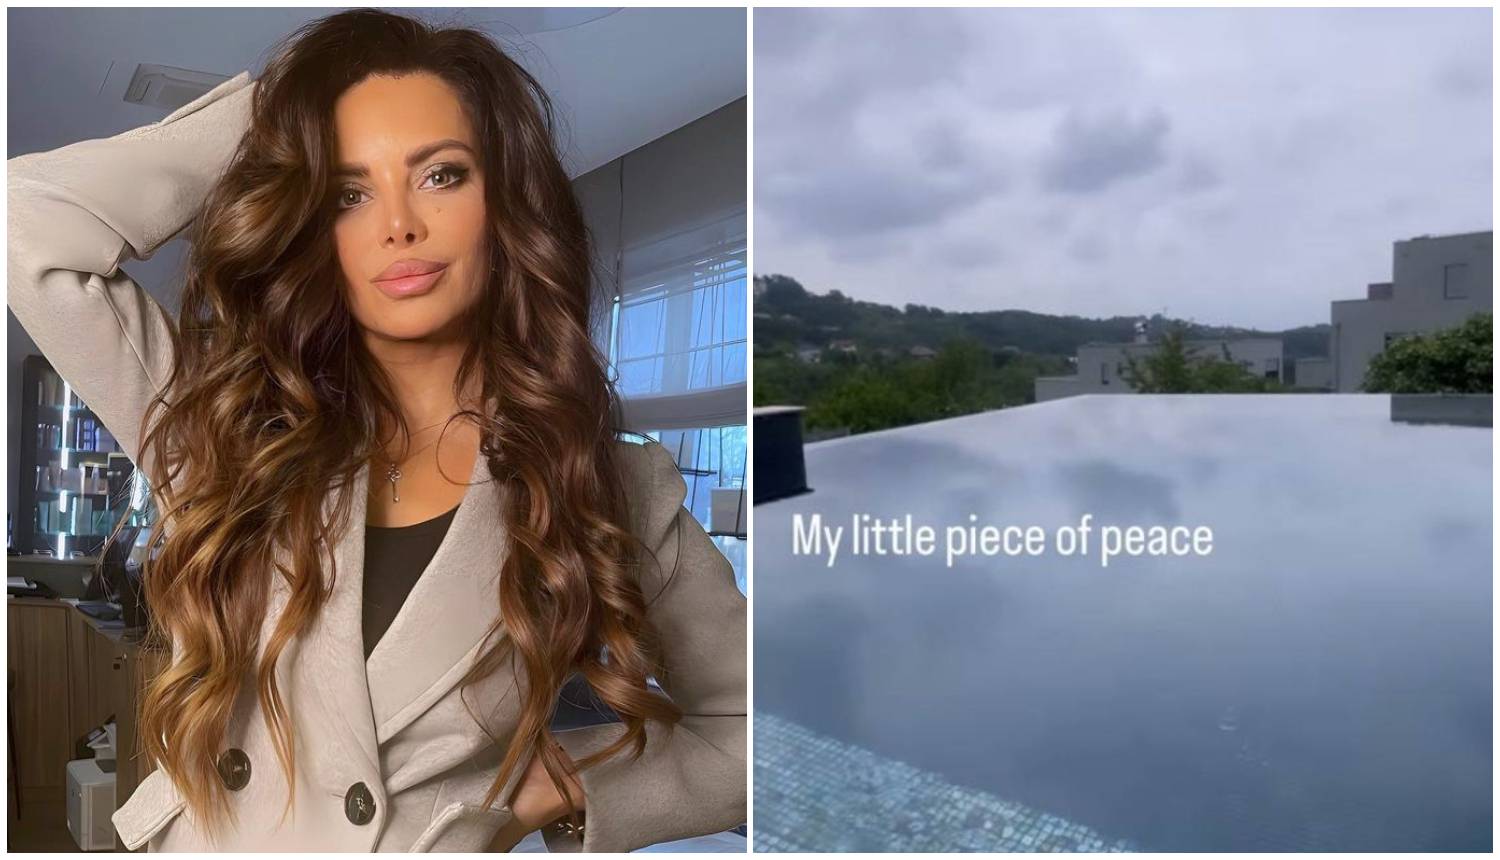 Pišek pokazala svoju luksuznu vilu i otkrila kada će se moći useliti u nju: 'Moj mali dio mira'